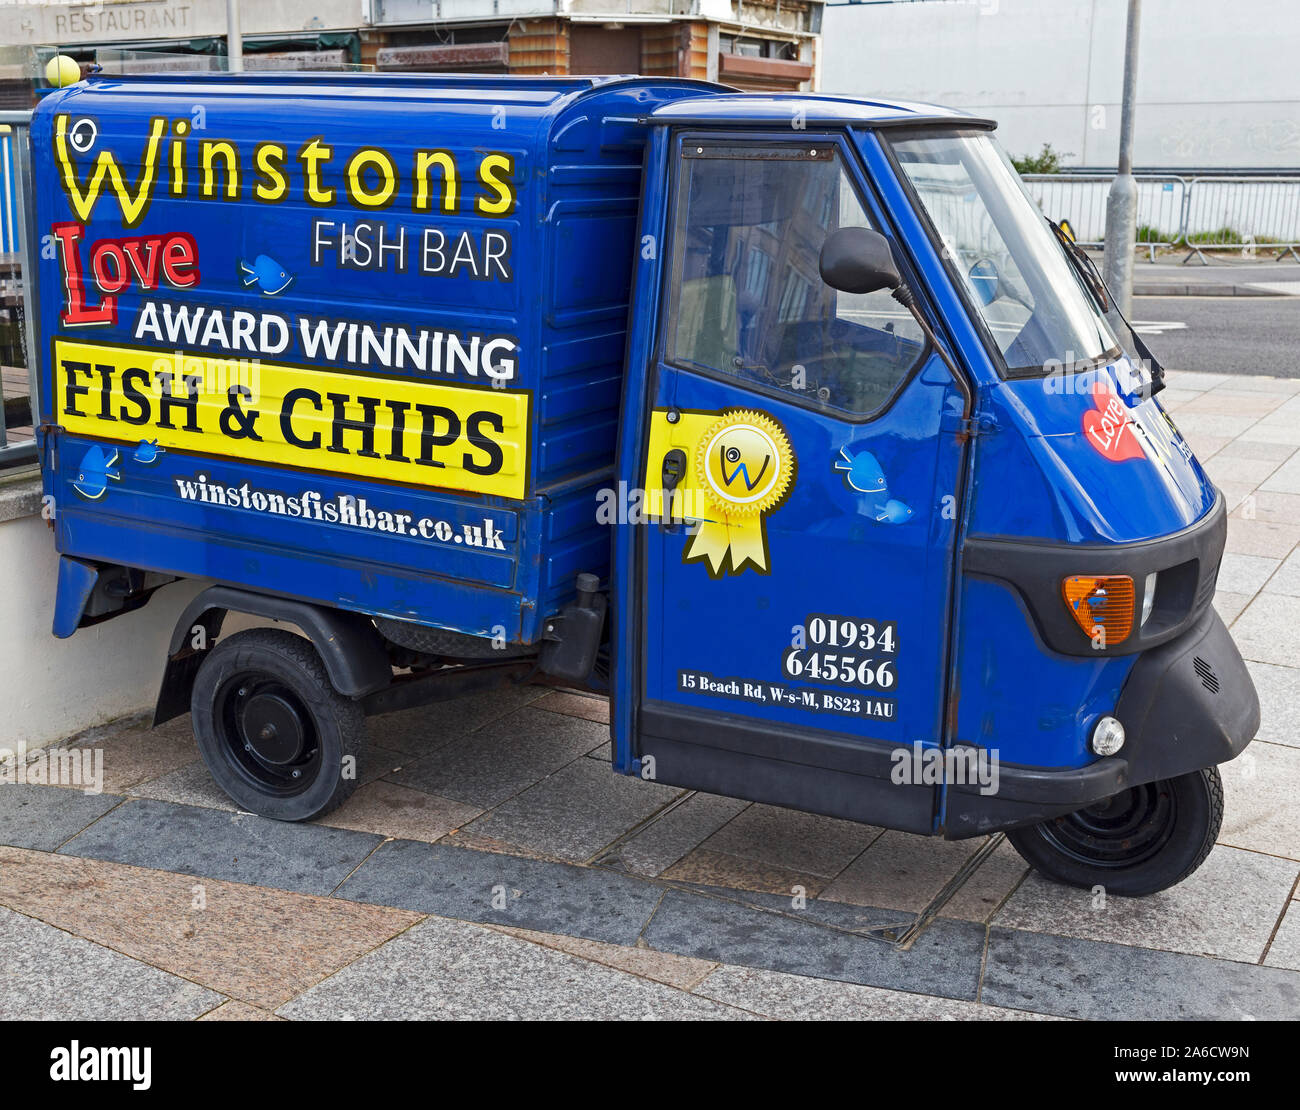 Un trois-roues van publicité Winston's Fish Bar à Weston-super-Mare, UK Banque D'Images